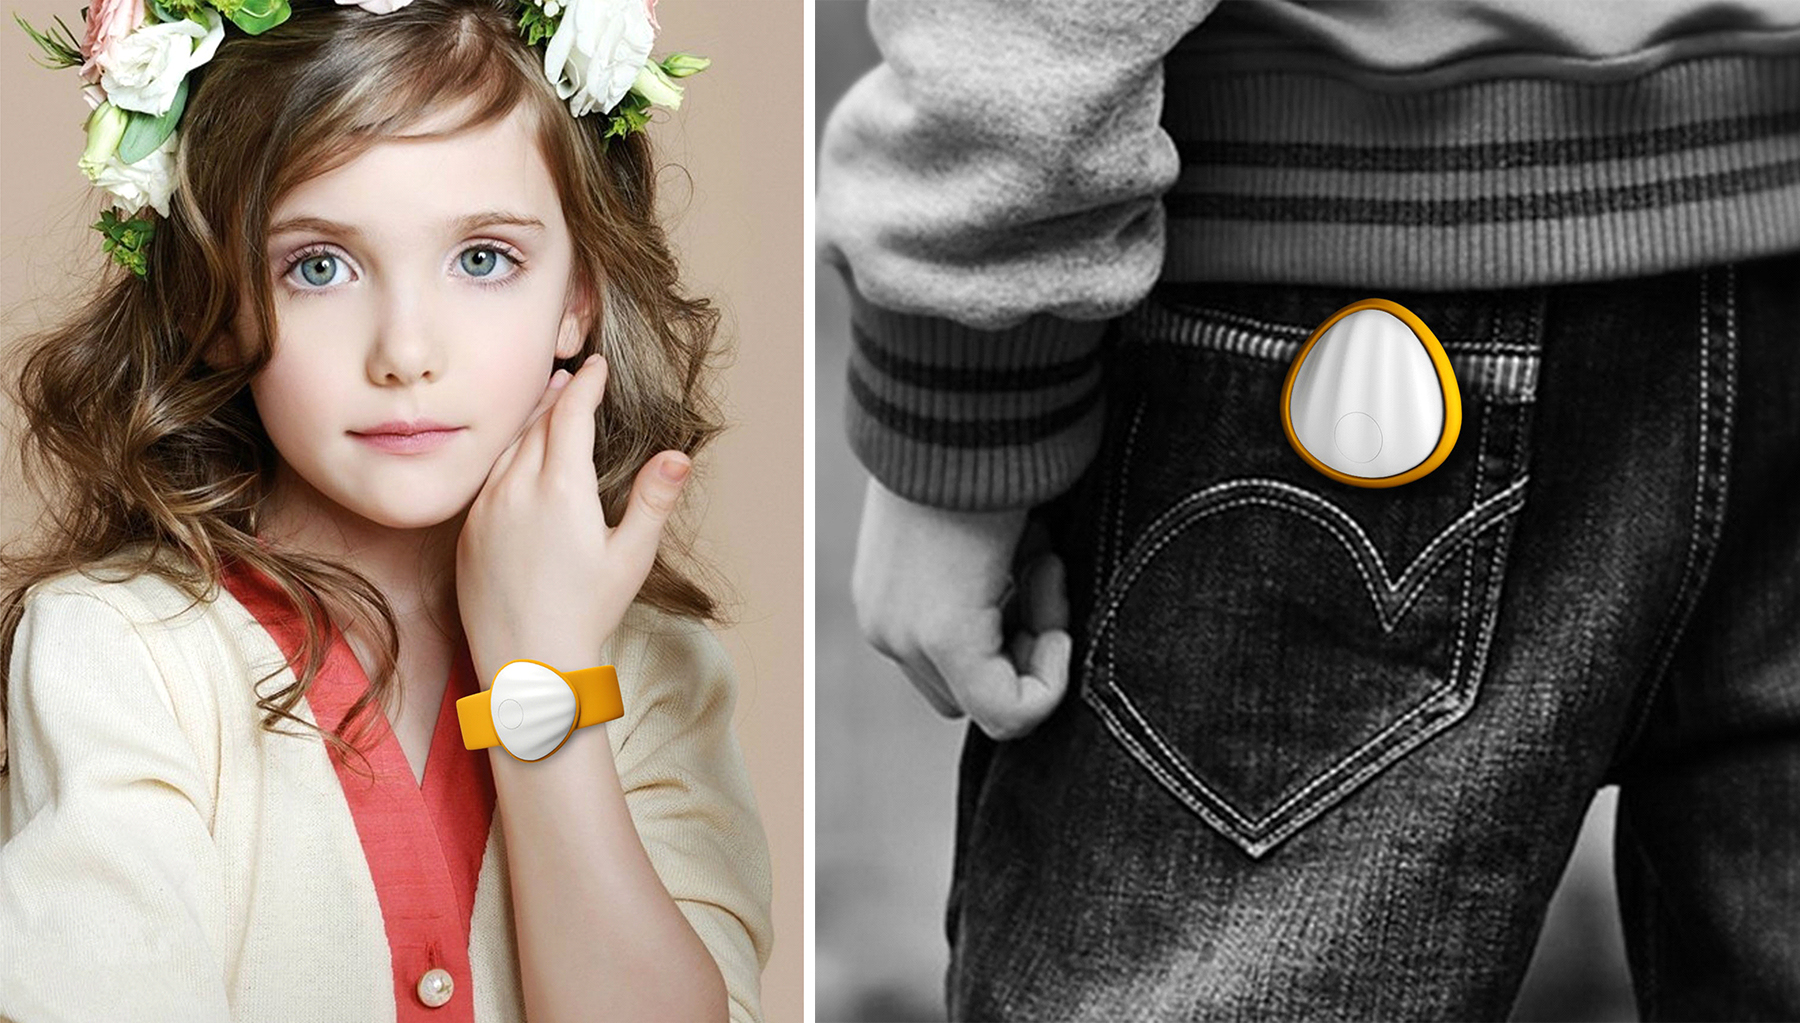 儿童腕戴手表与卡戴式手表使用效果